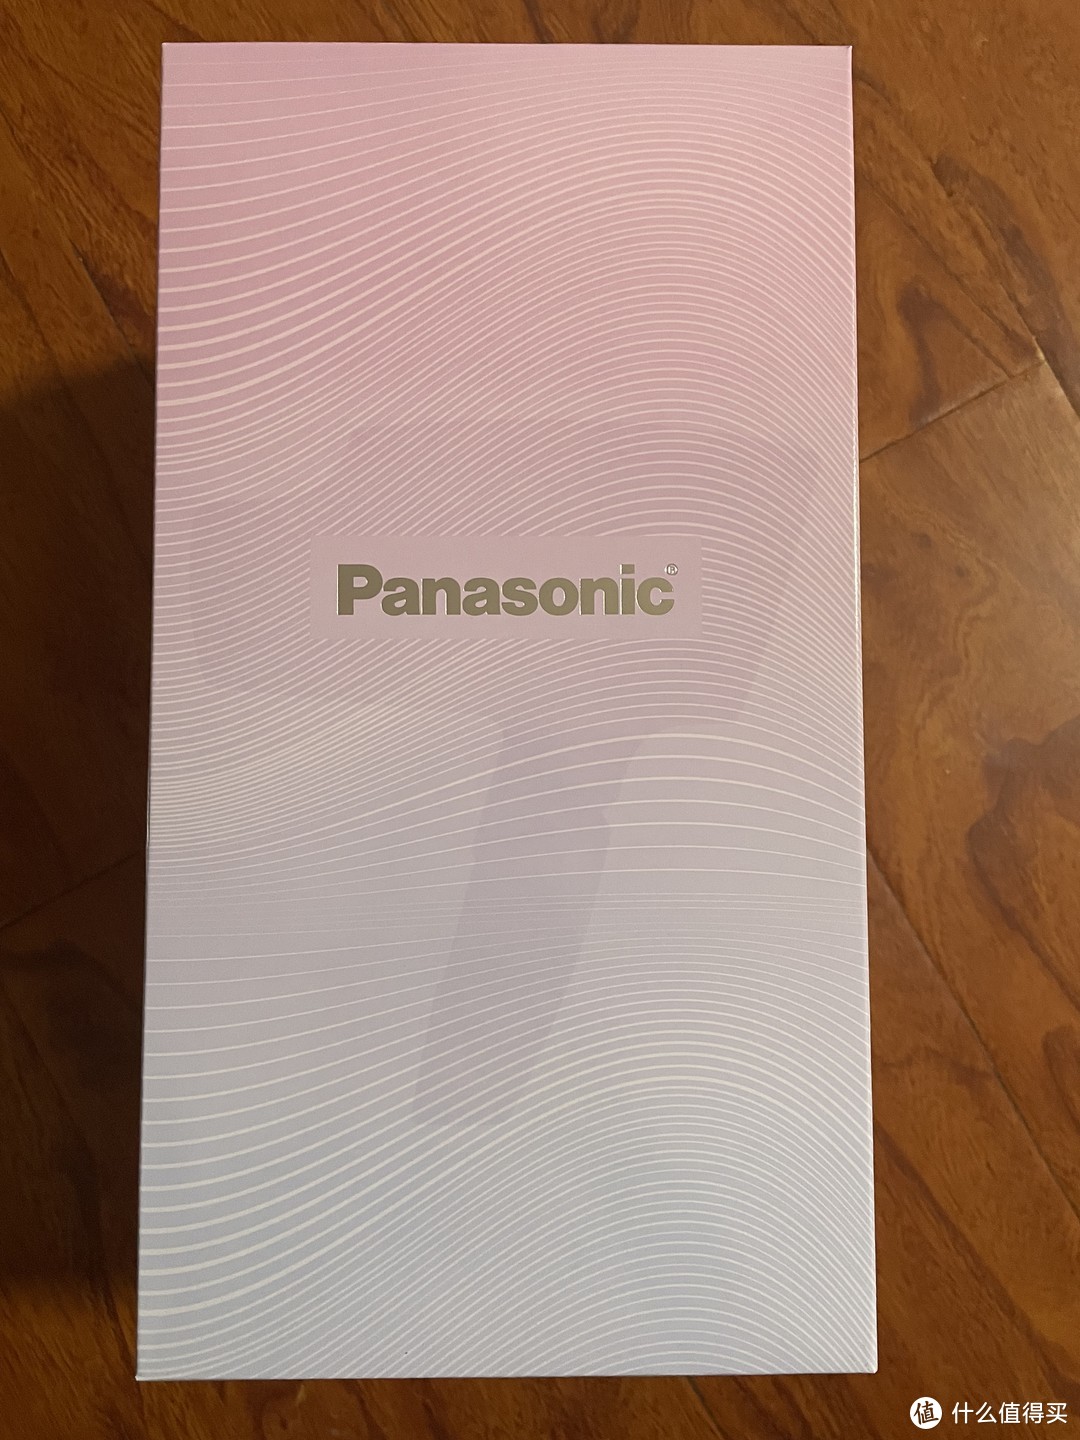 颜值与实力并存的“真香”Panasonic松下EH-NA98Q 人鱼姬吹风机